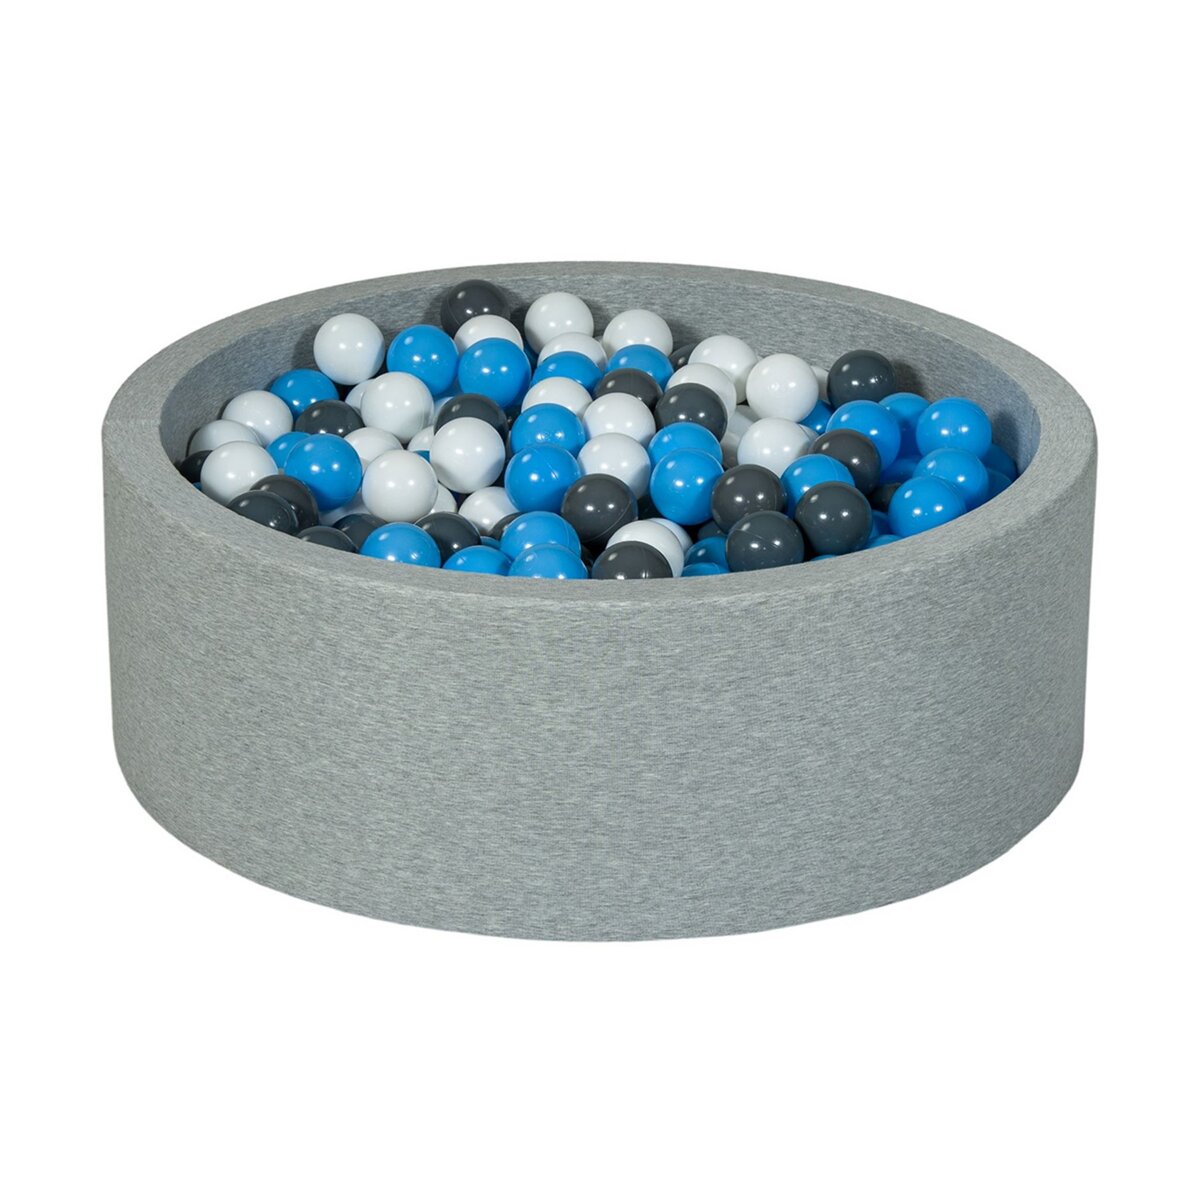  Piscine à balles Aire de jeu + 450 balles blanc, gris, bleu clair